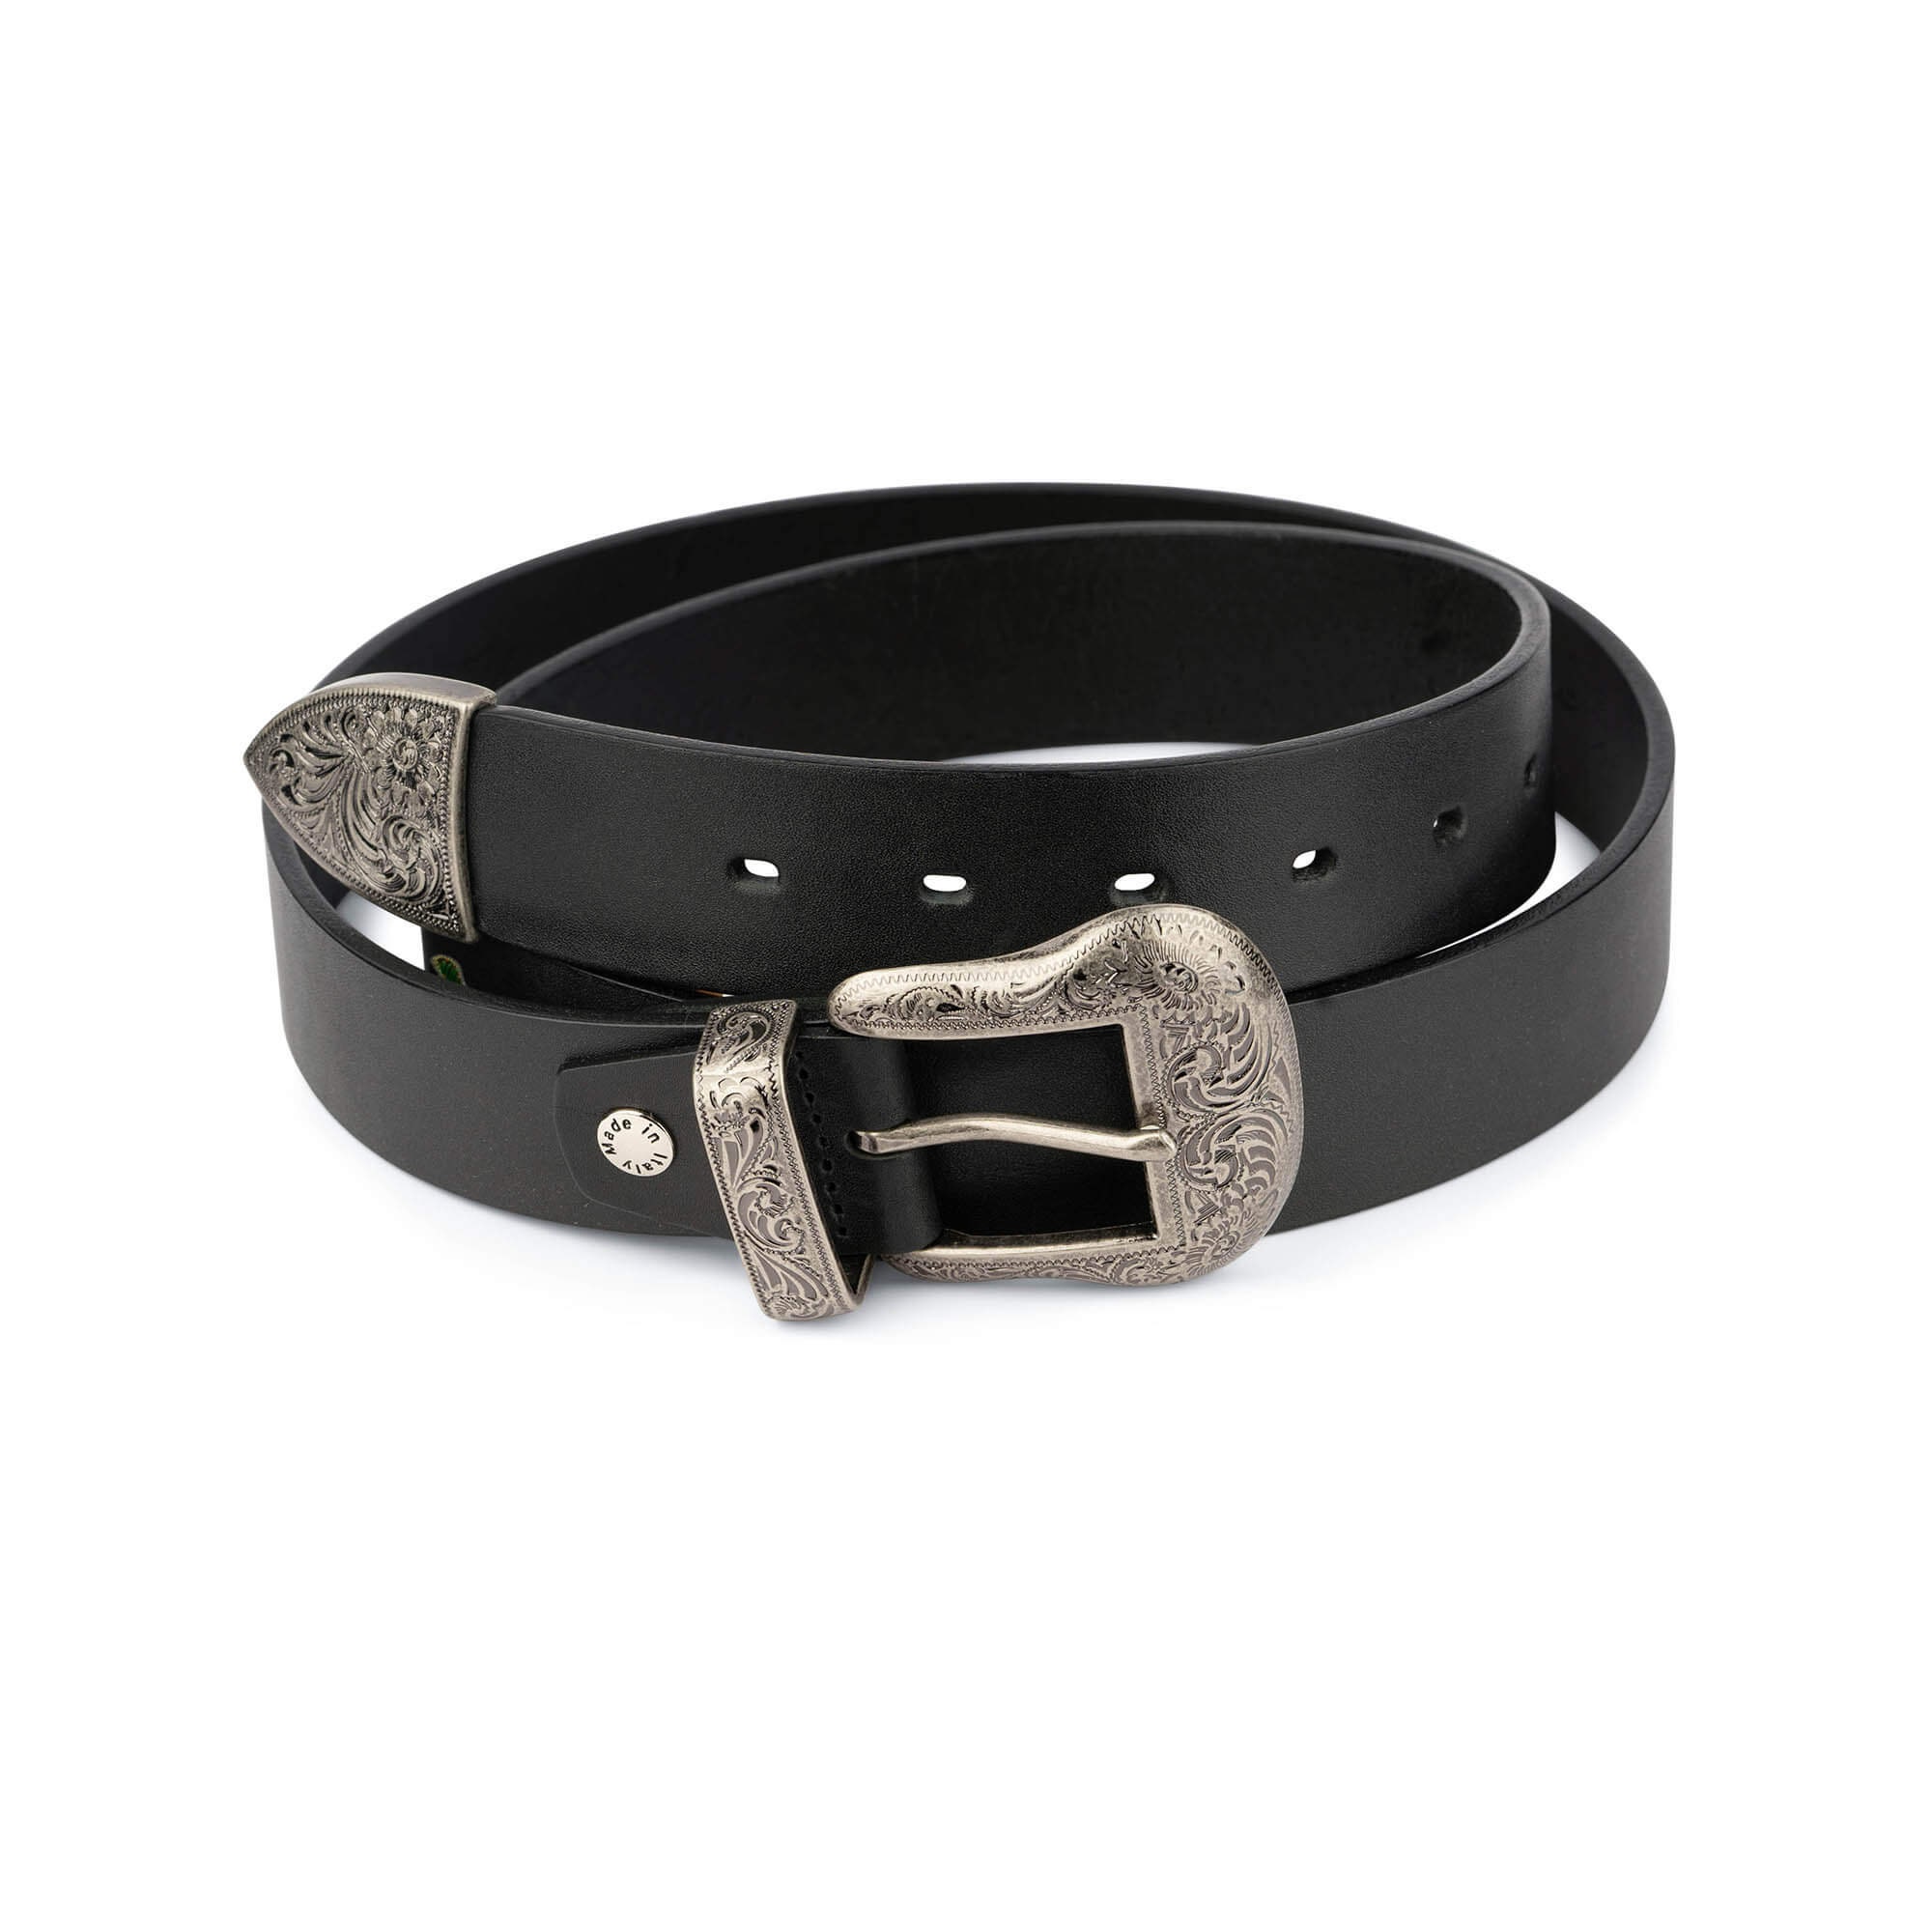 1335 - Cinturones occidentales para mujer, cinturones de vaquera,  cinturones de rodeo, cinturones occidentales de talla grande para vaqueras